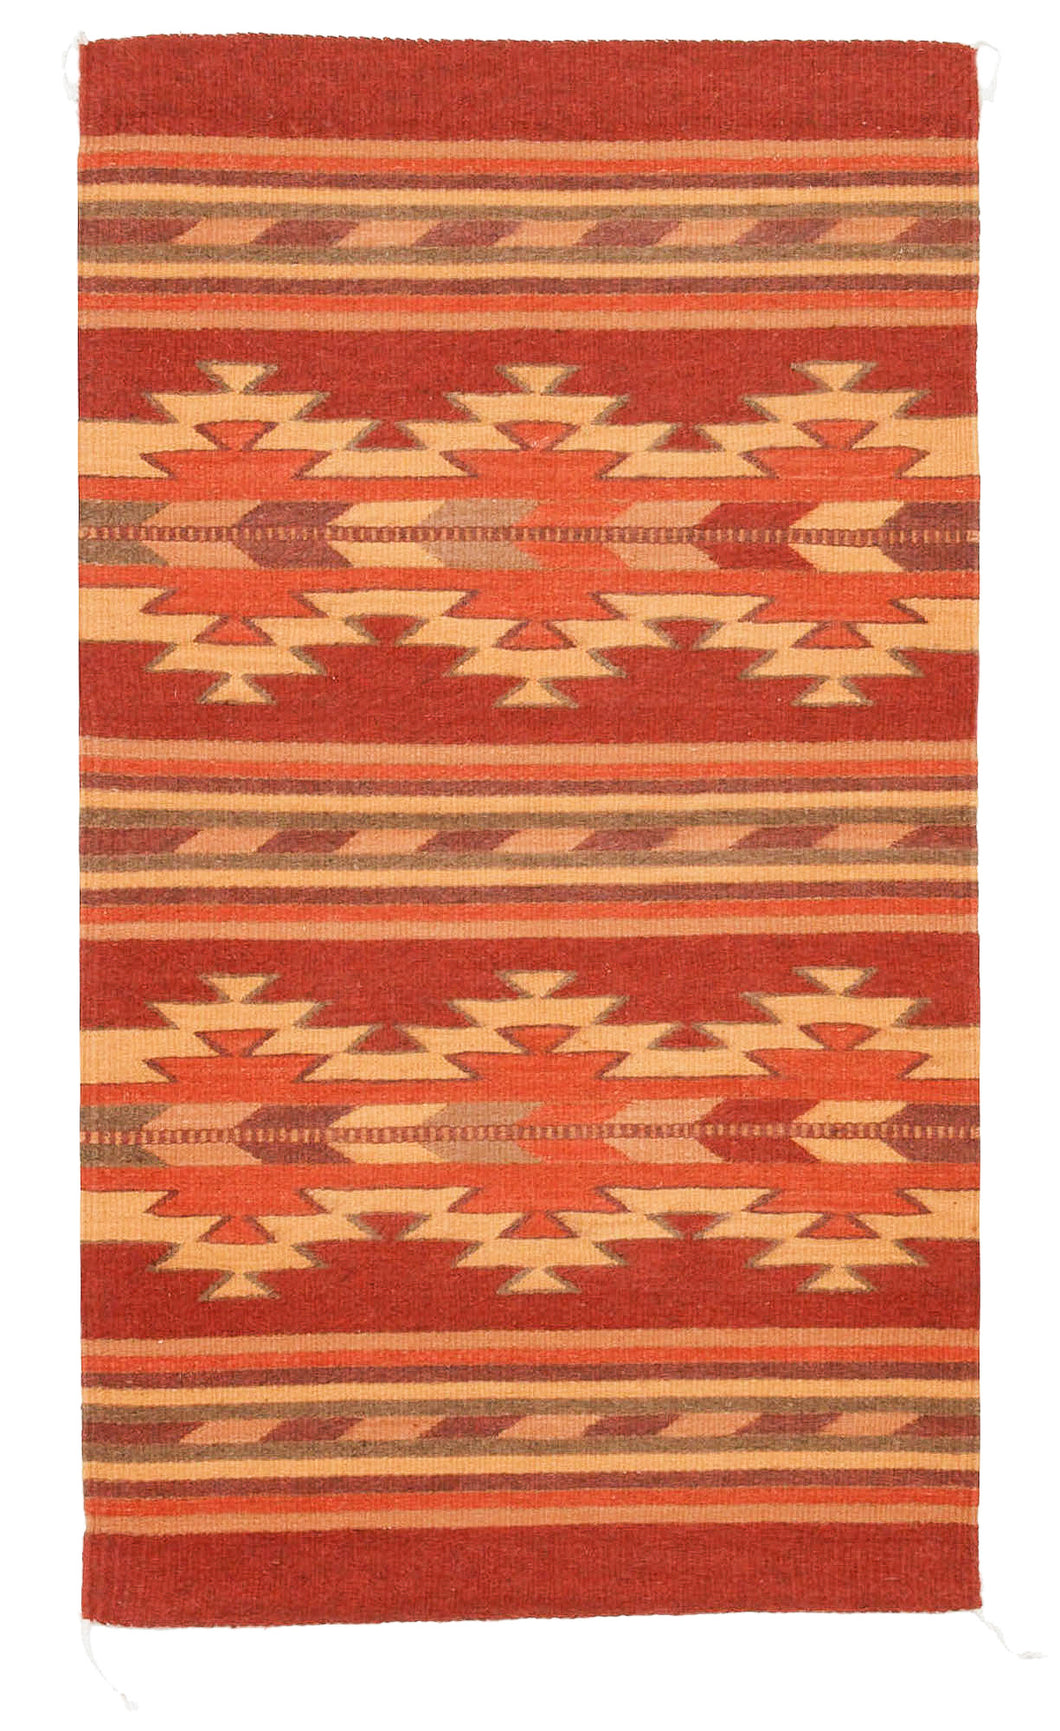 Handwoven Zapotec Rug - Autumn Crystal Wool Oaxacan Textile